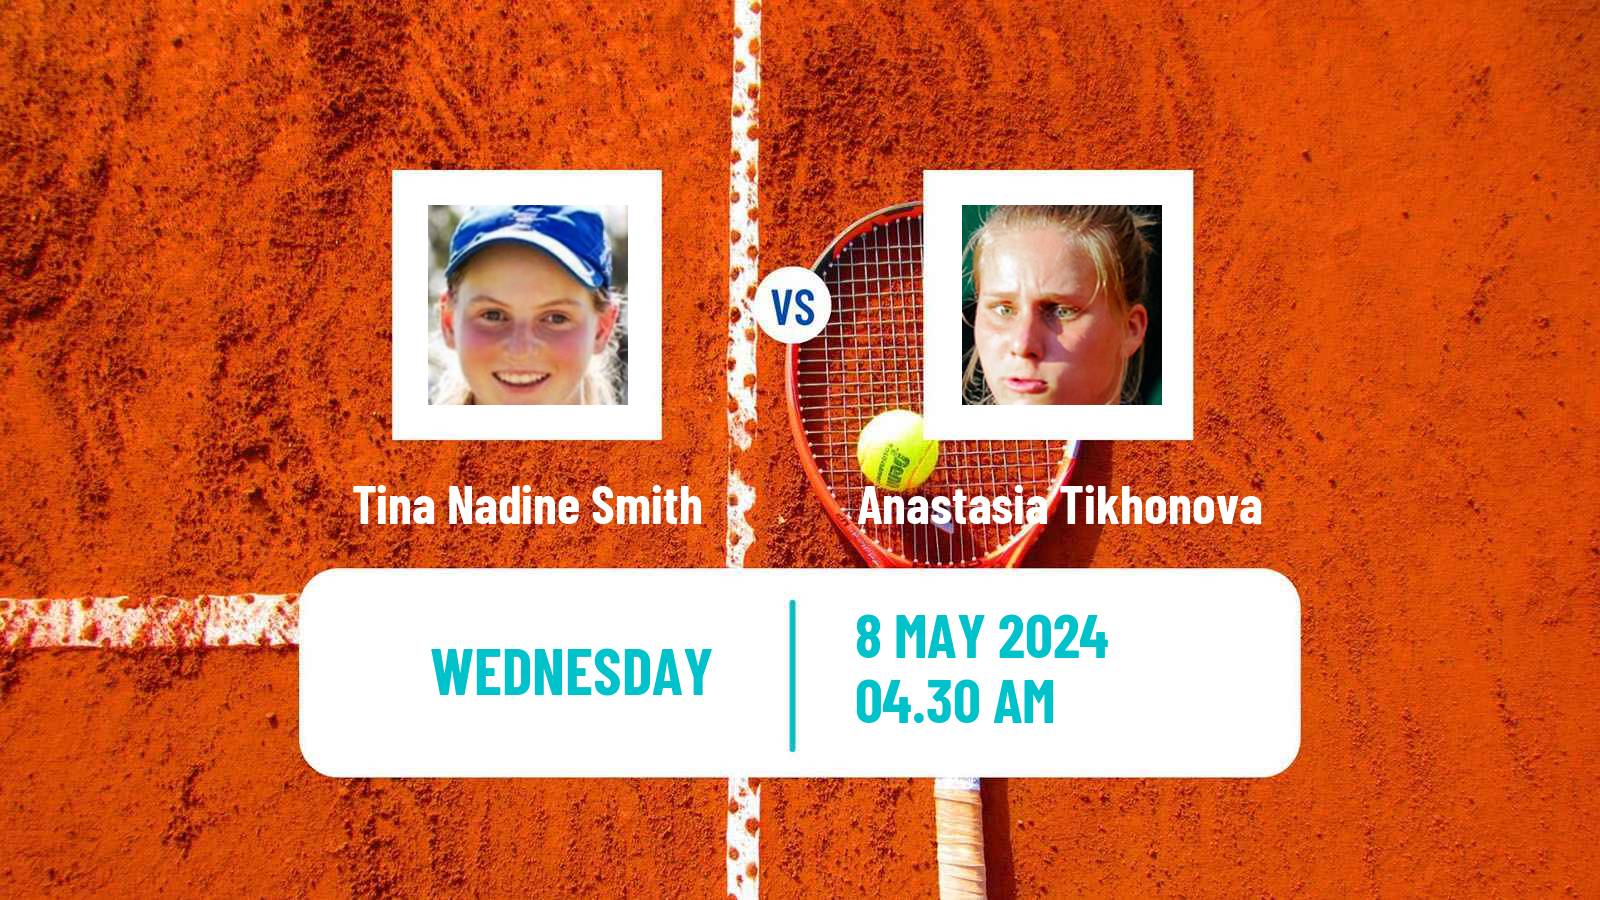 Tennis ITF W75 H Saint Gaudens Women Tina Nadine Smith - Anastasia Tikhonova